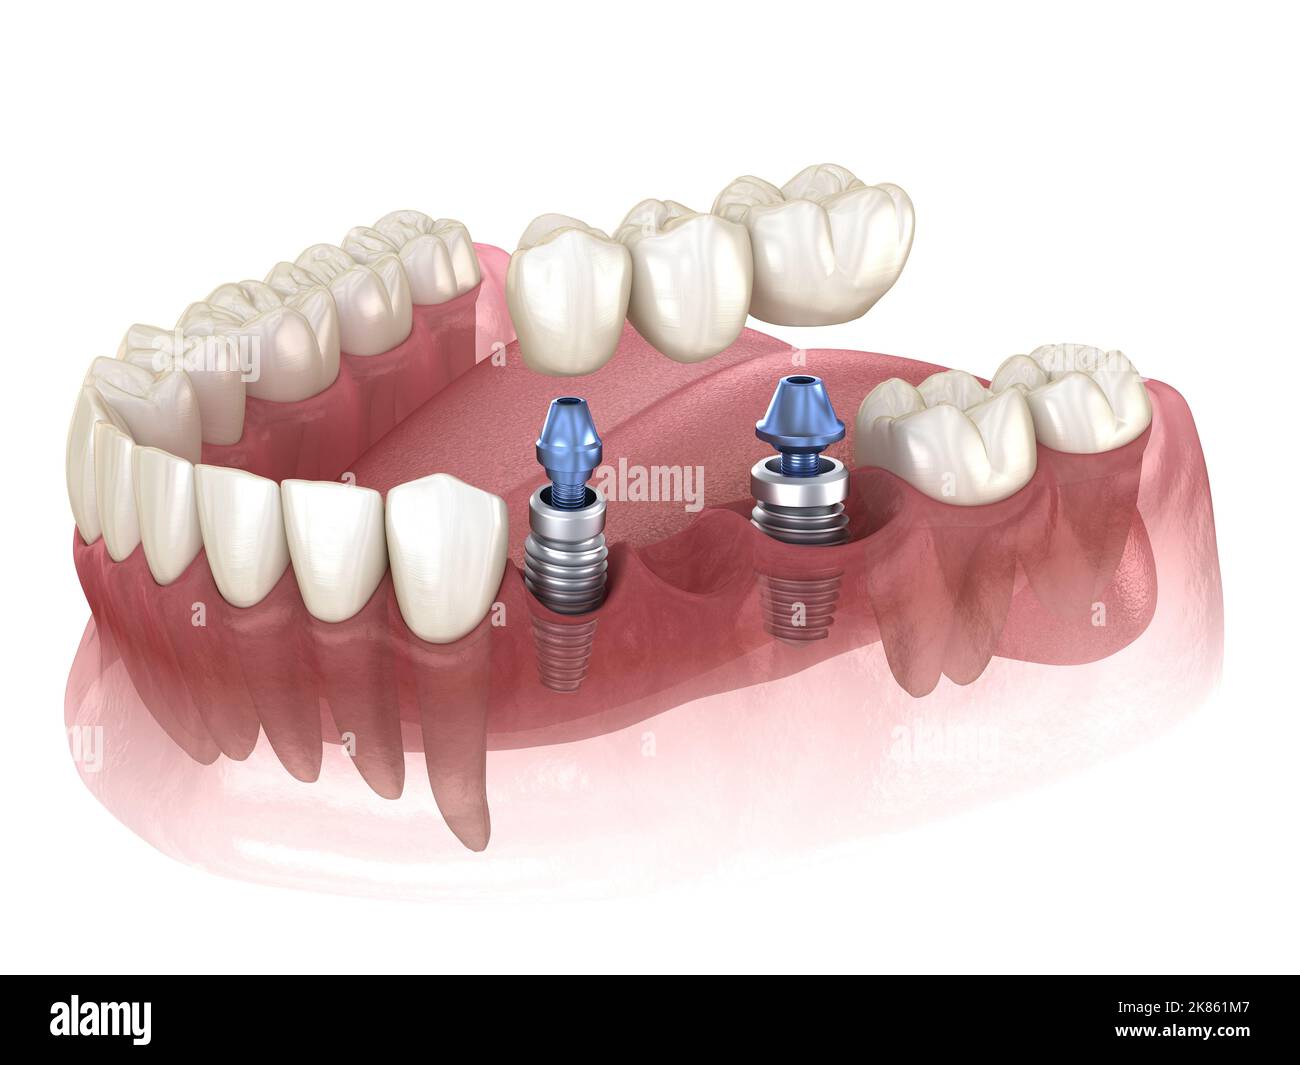 Brücke von Implantaten. Medizinisch genaue 3D-Abbildung der menschlichen Zähne und Zahnersatz Konzept Stockfoto